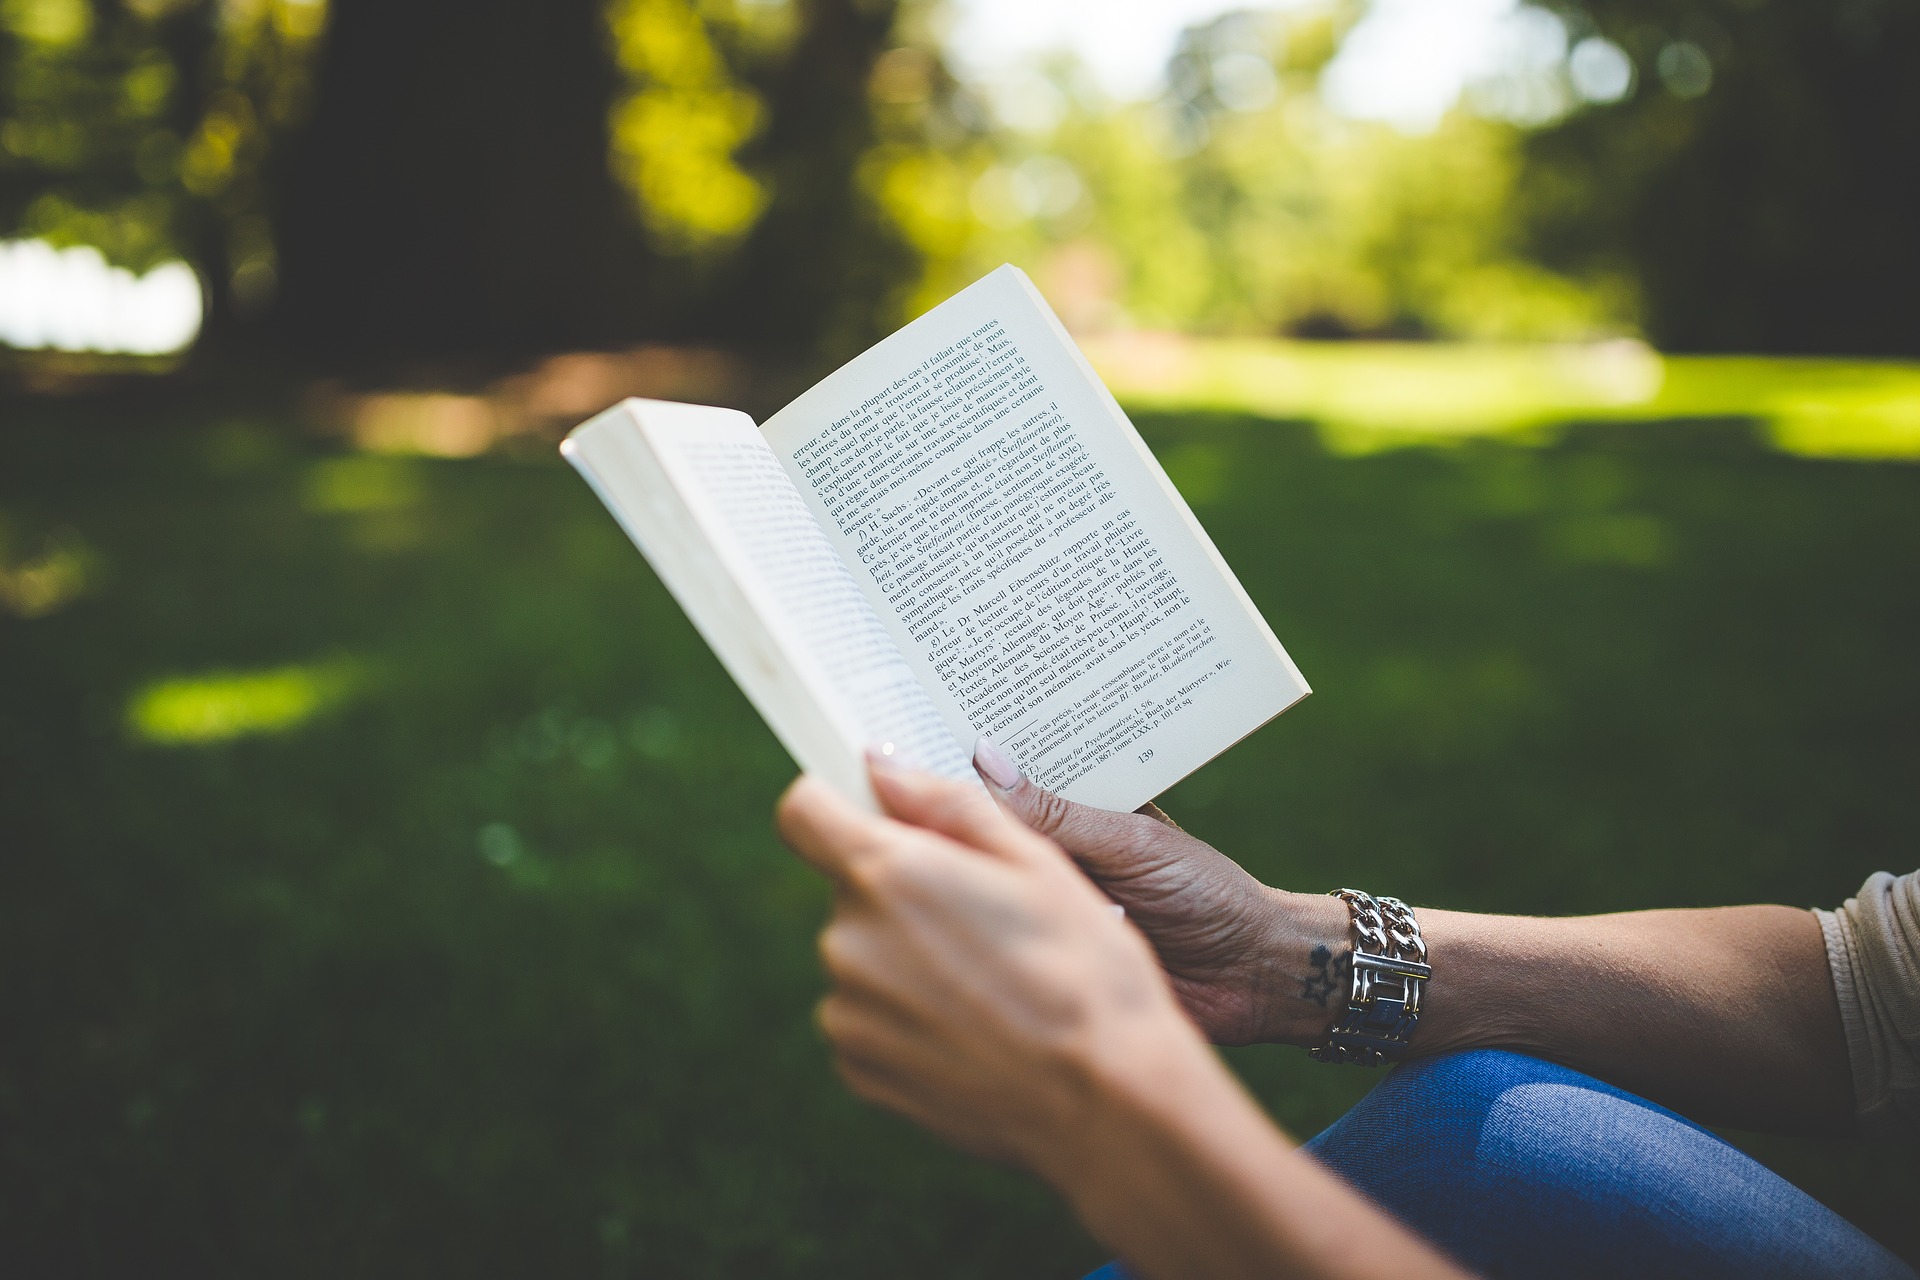 El confinamiento es una buena oportunidad para acercarse a la lectura. (Foto Prensa Libre: Pixabay)